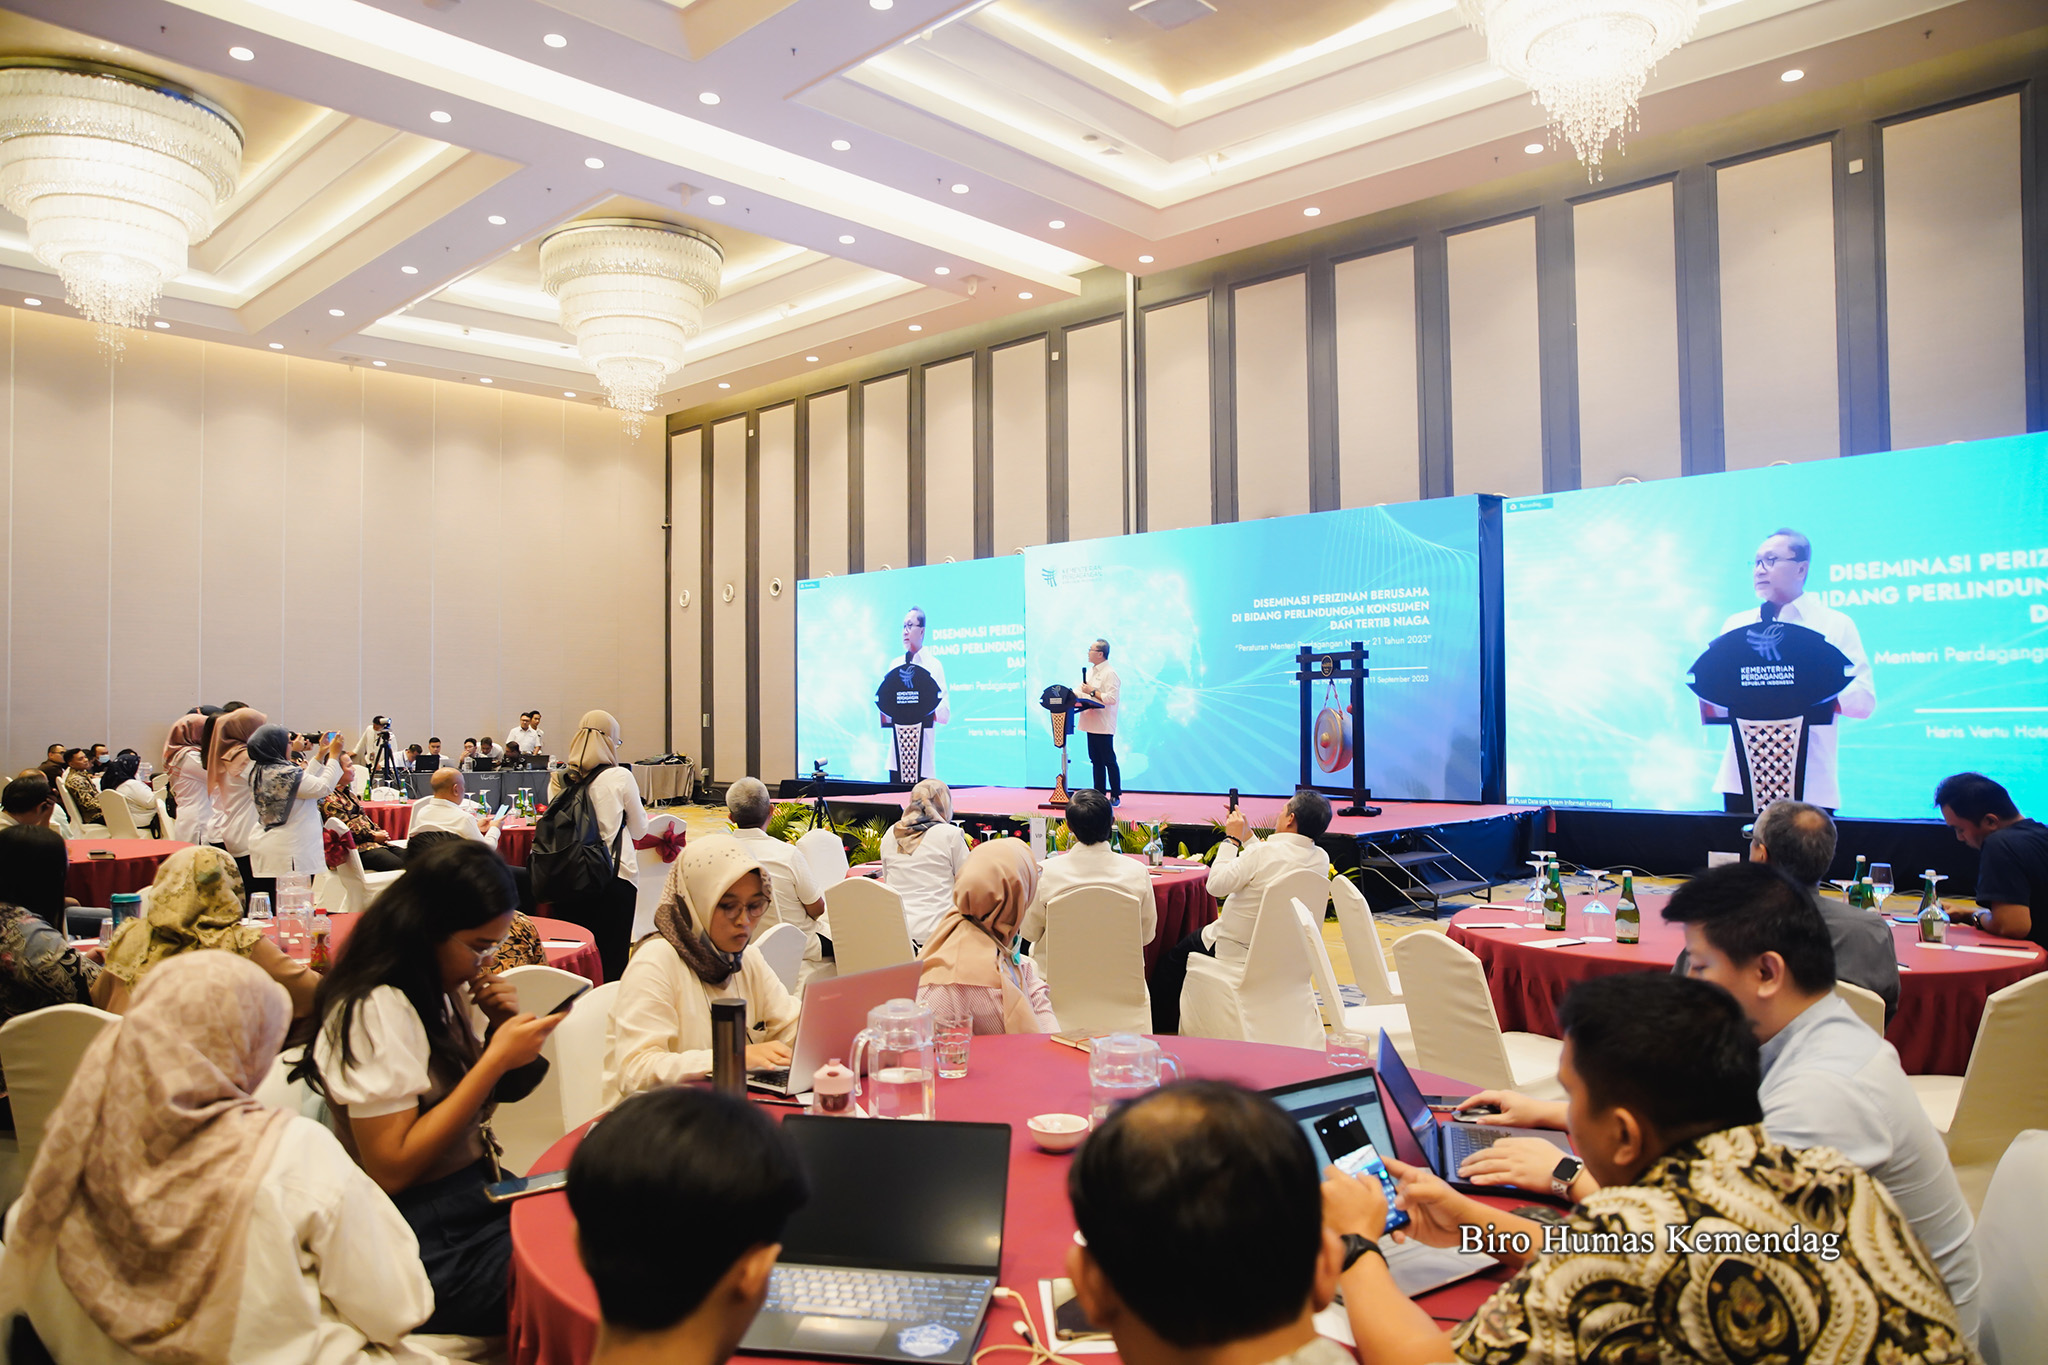 Menteri Perdagangan, Zulkifli Hasan membuka acara Diseminasi Perizinan Berusaha di Bidang Perlindungan Konsumen dan Tertib Niaga yang diselenggarakan di Jakarta, Senin (11 Sep). Acara ini dilaksanakan secara hibrida dan dihadiri sekitar 200 peserta secara fisik dan 1.000 peserta secara daring.